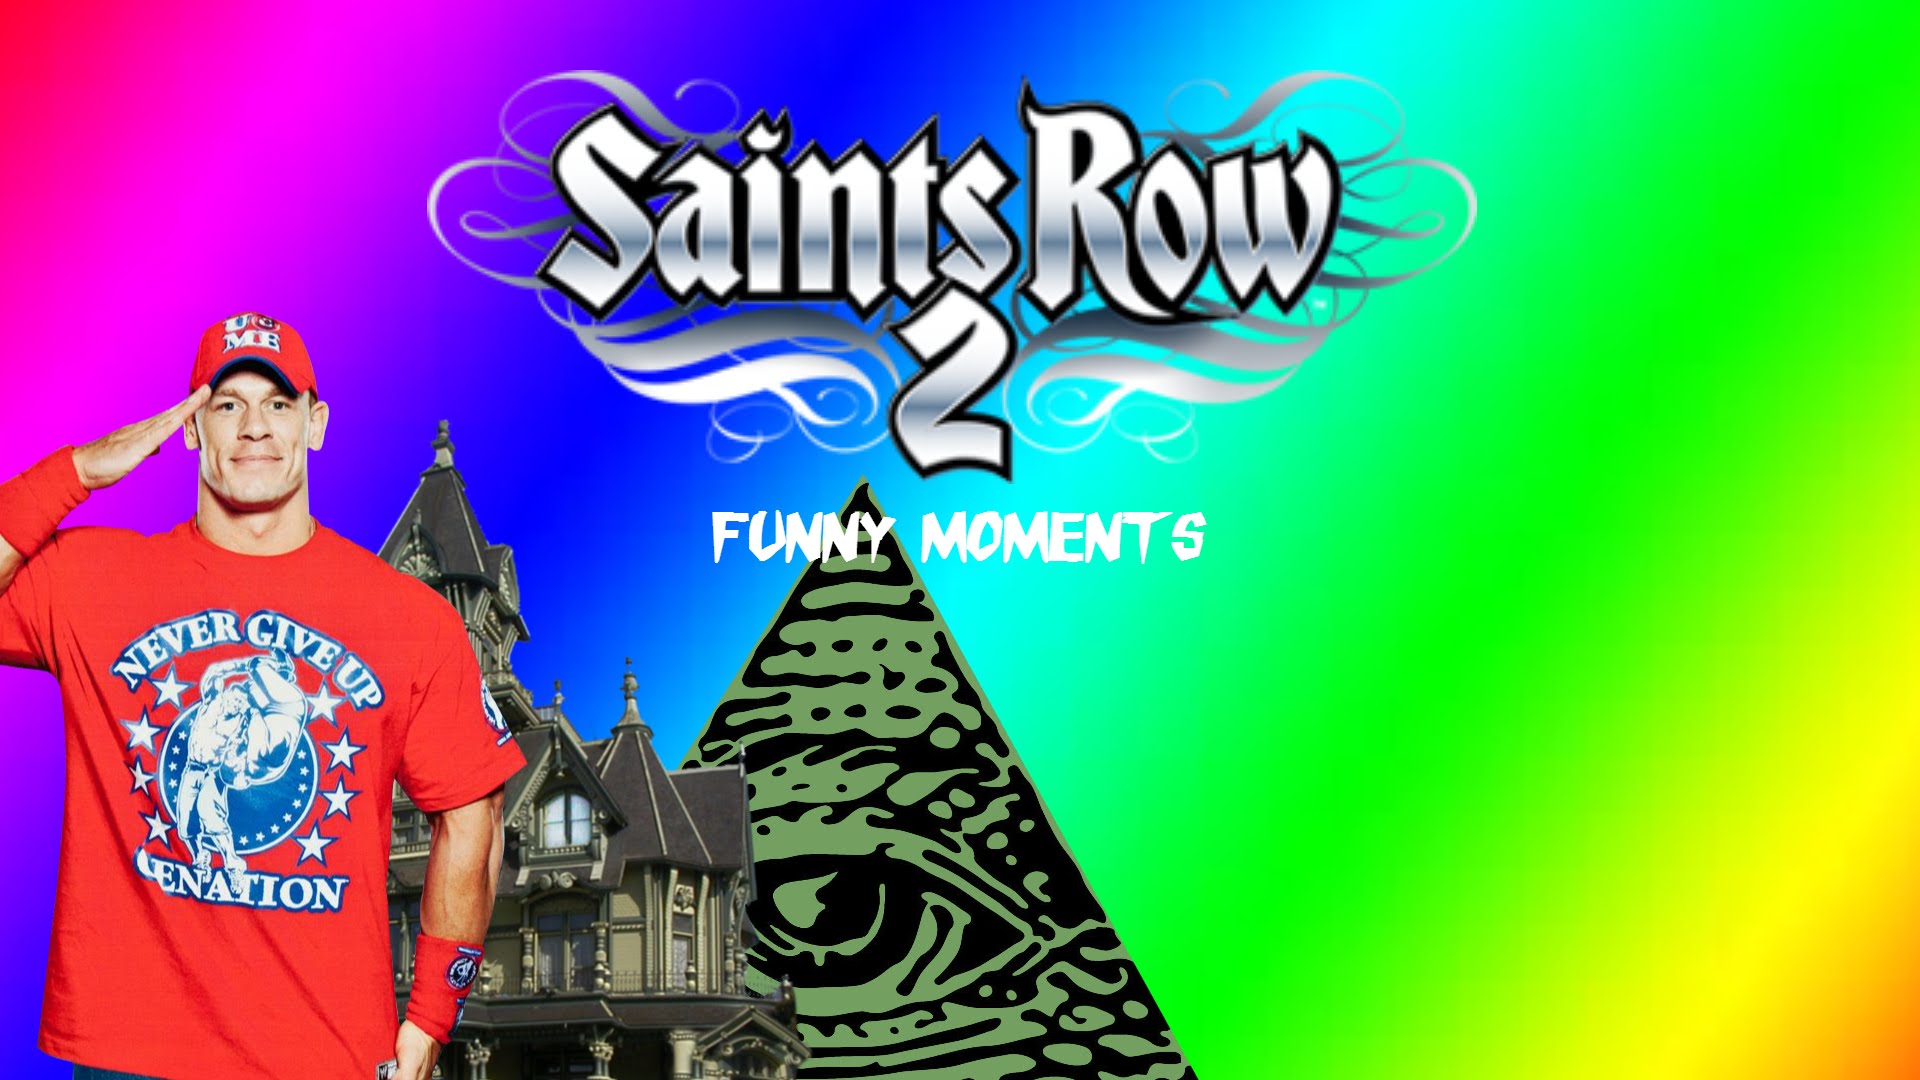 Saints row 2 funny moments (character customization, john cena ...